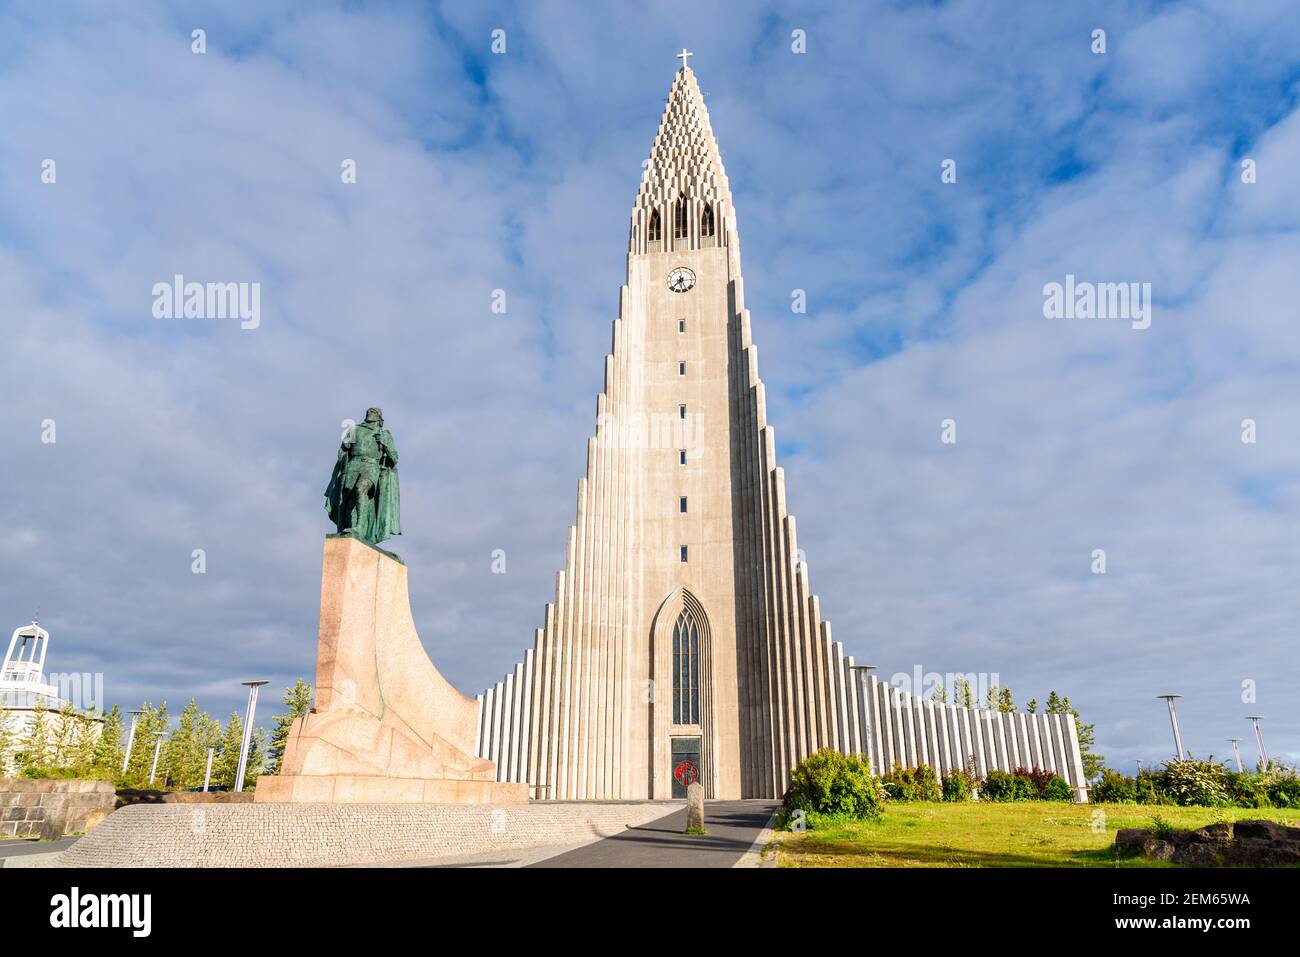 Vista della chiesa di Hallgrimskirkja con la statua di Leif Eriksson in foregrond nel centro di Reykjavik, Islanda, in una soleggiata serata estiva Foto Stock